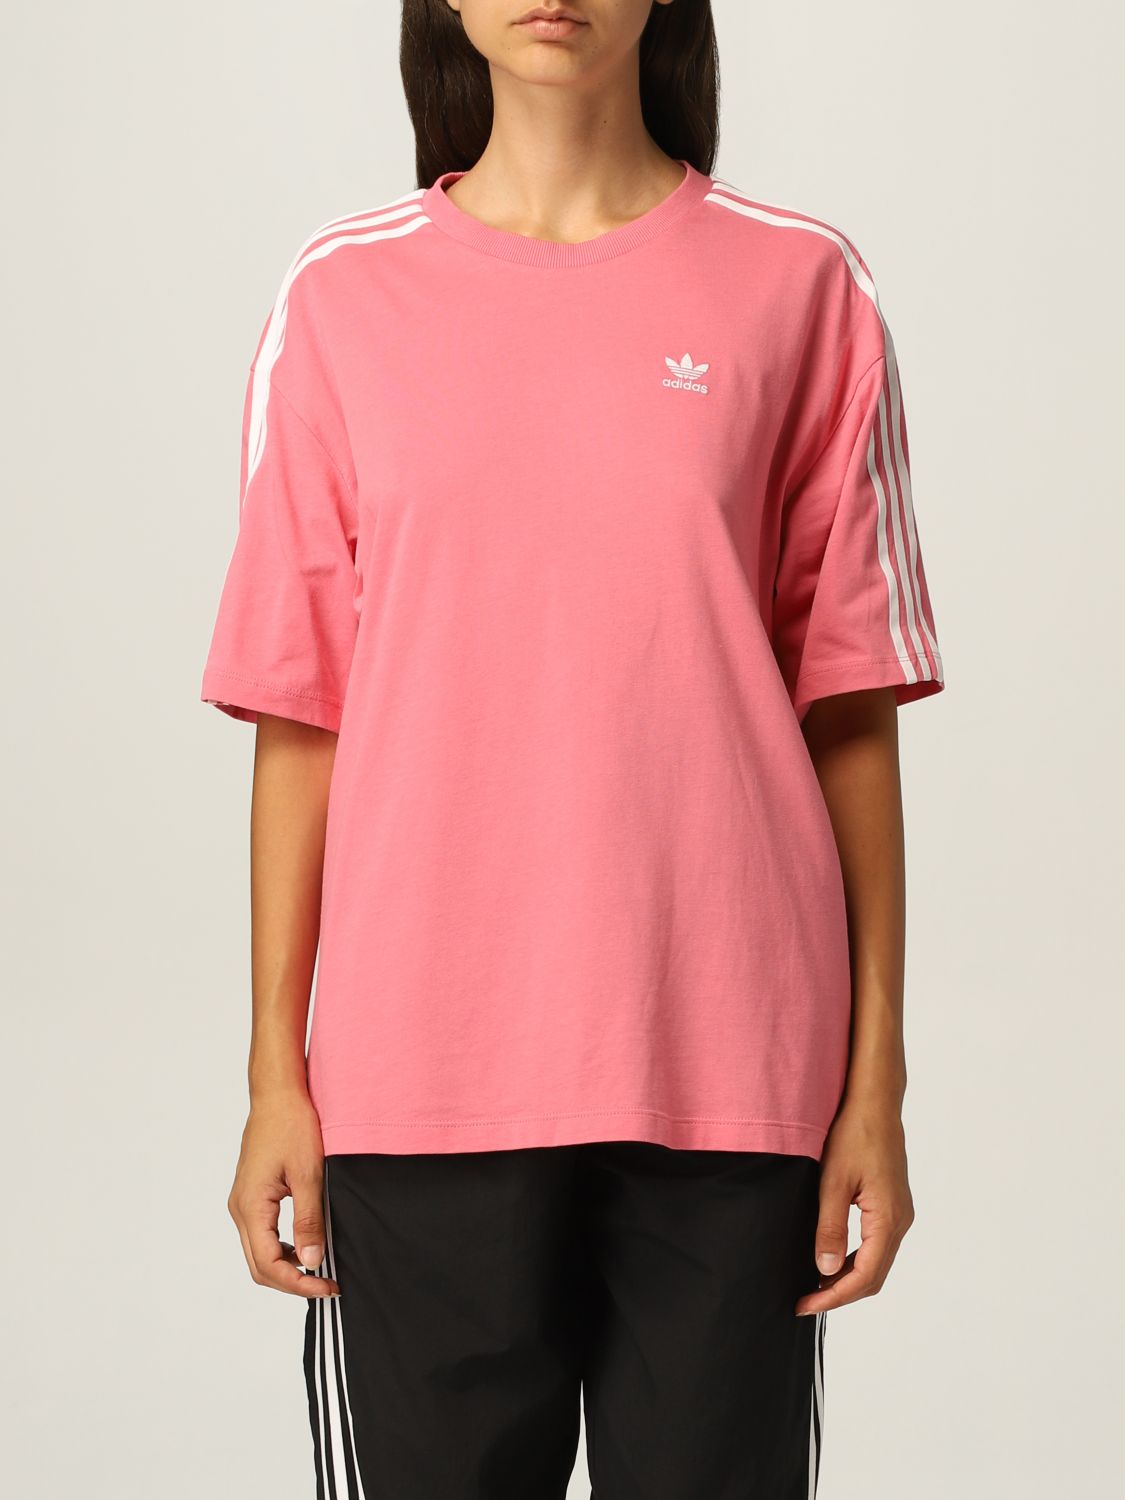 Adidas Originals Tシャツ レディース ピンク Giglio Comオンラインのadidas Originals Tシャツ H